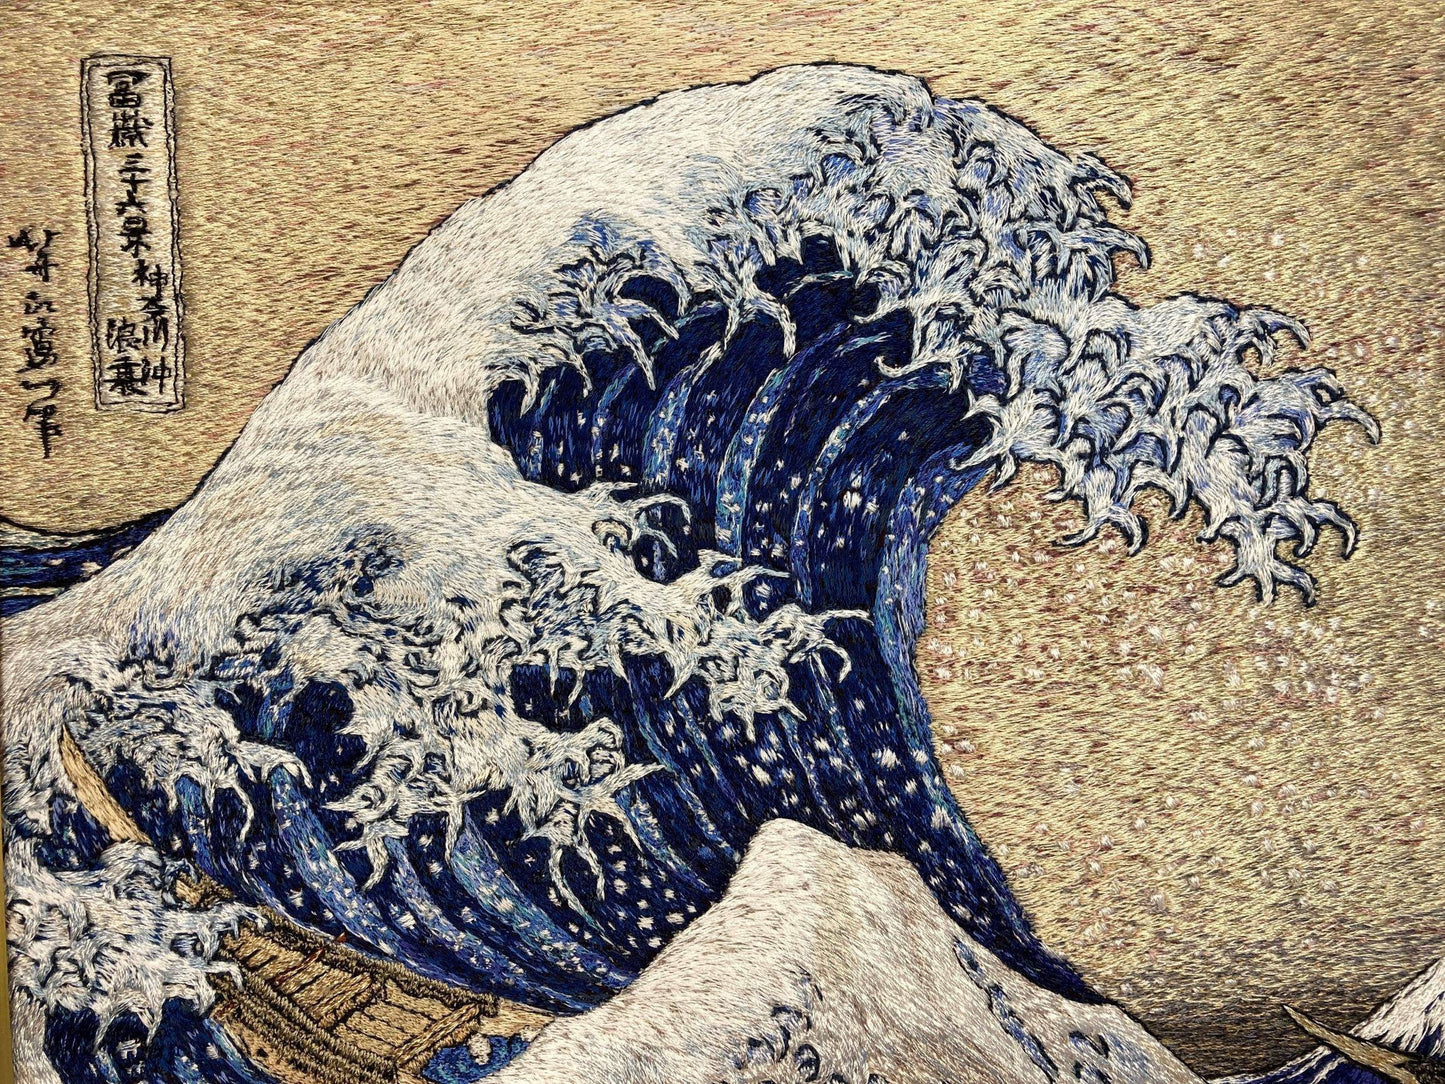 UKIYO-E embroidery